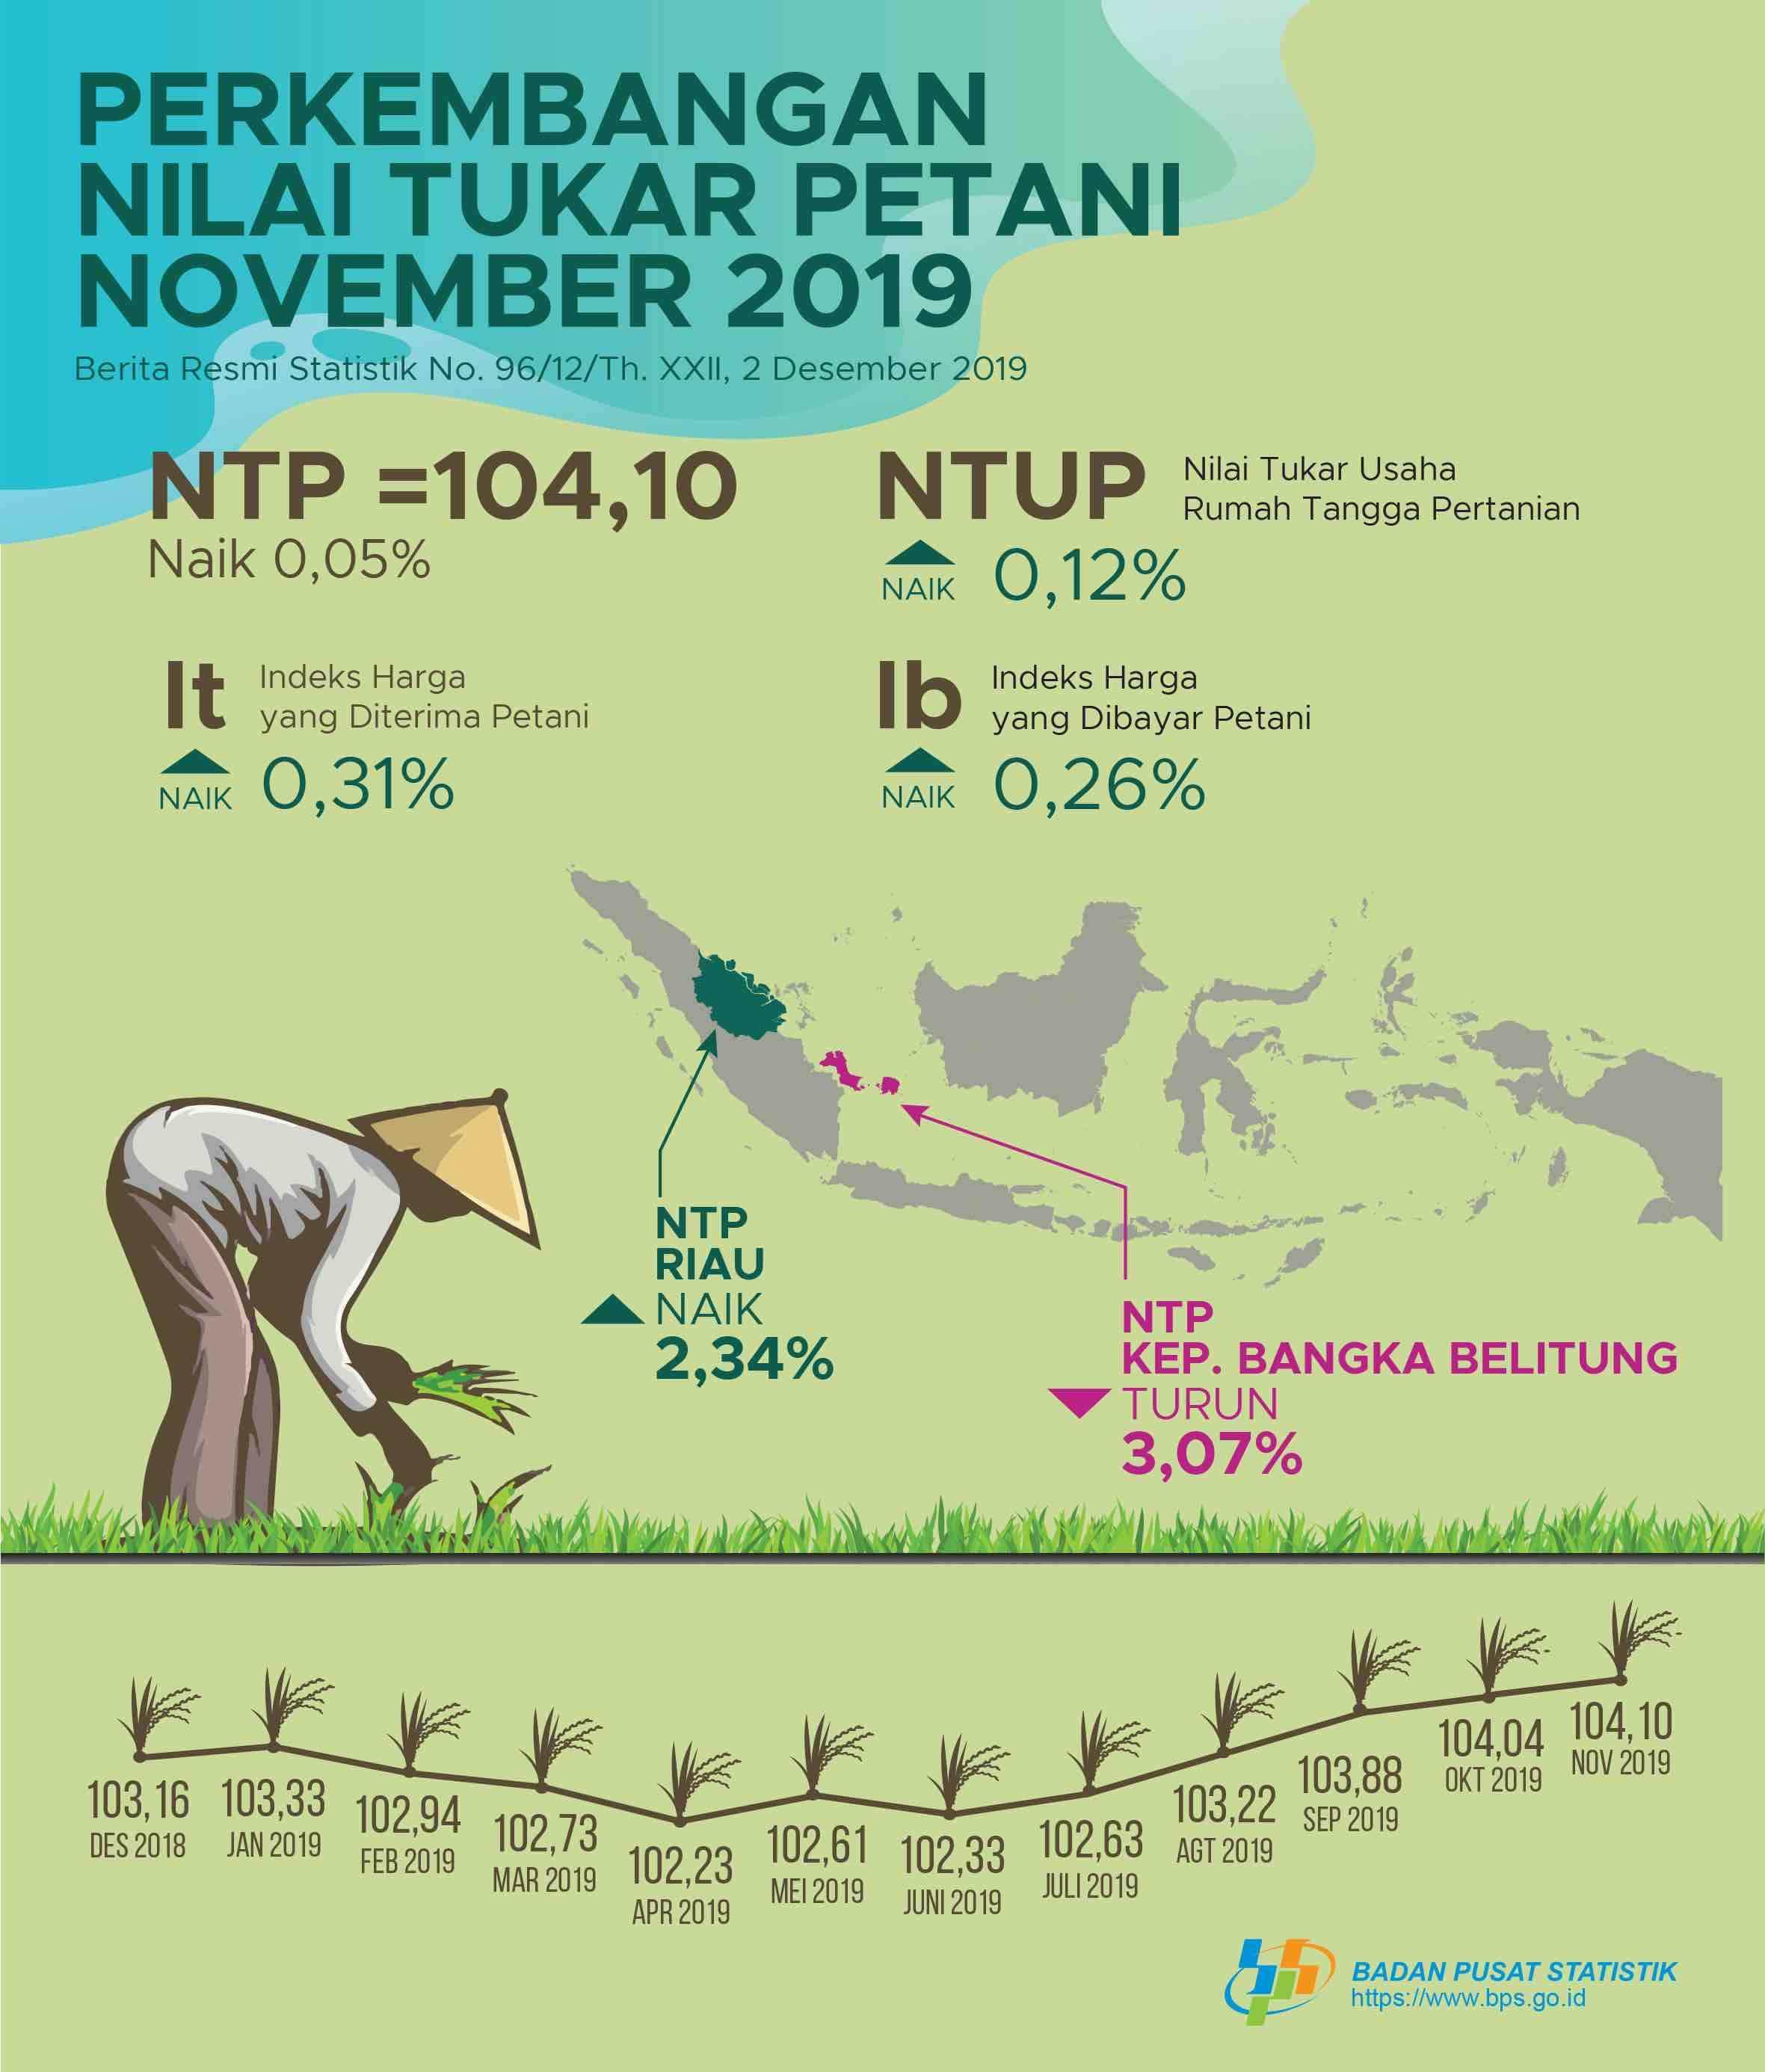 Nilai Tukar Petani (NTP) November 2019 sebesar 104,14 atau naik 0,05 persen